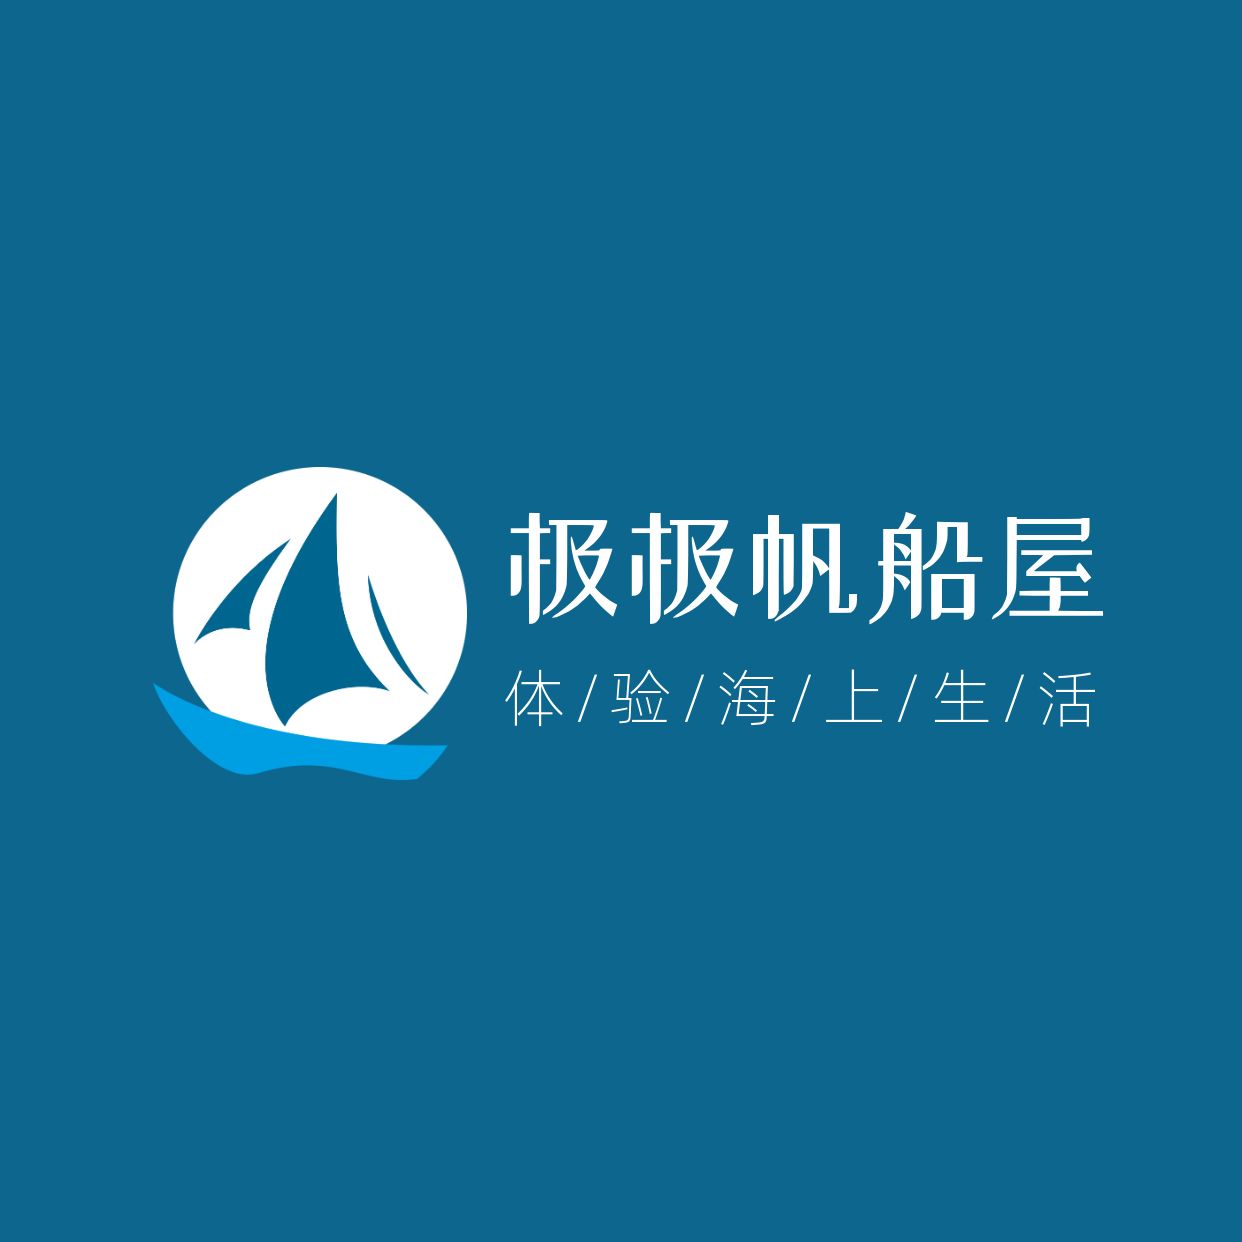 旅游船logo